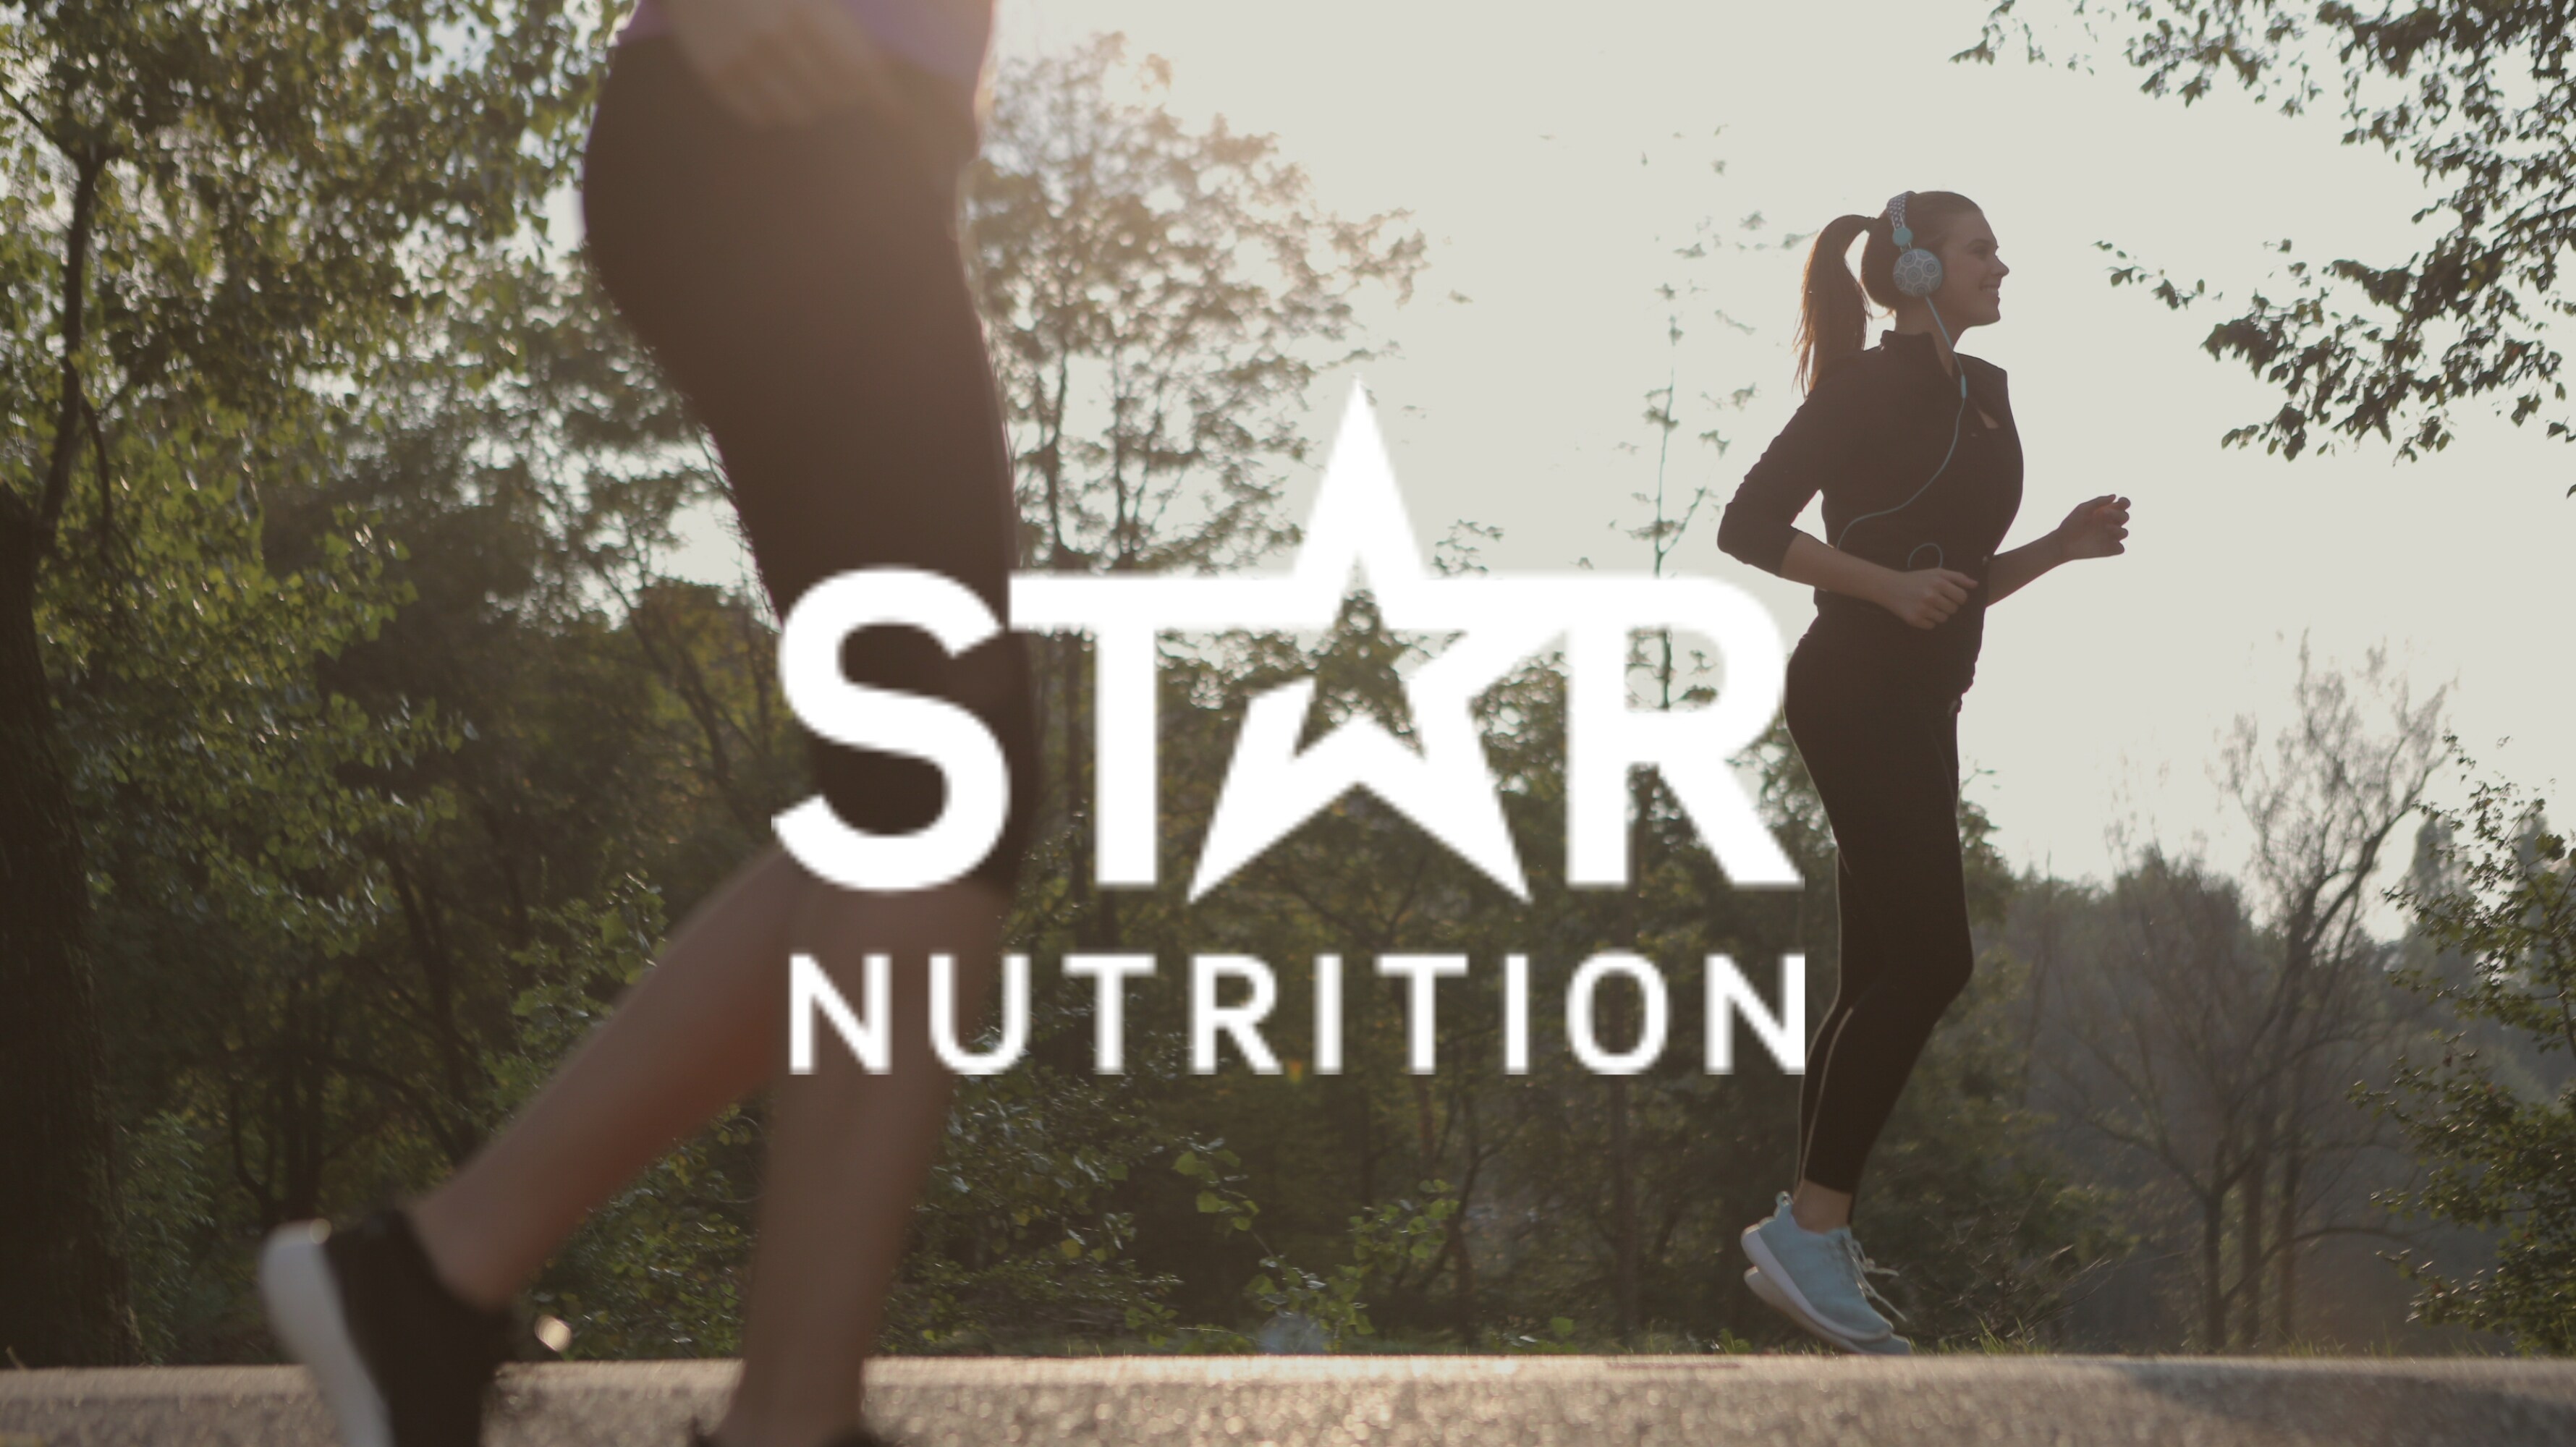 https://halsokosten.se/pub_docs/files/Varumärken/Star-Nutrition-3560x2000.png